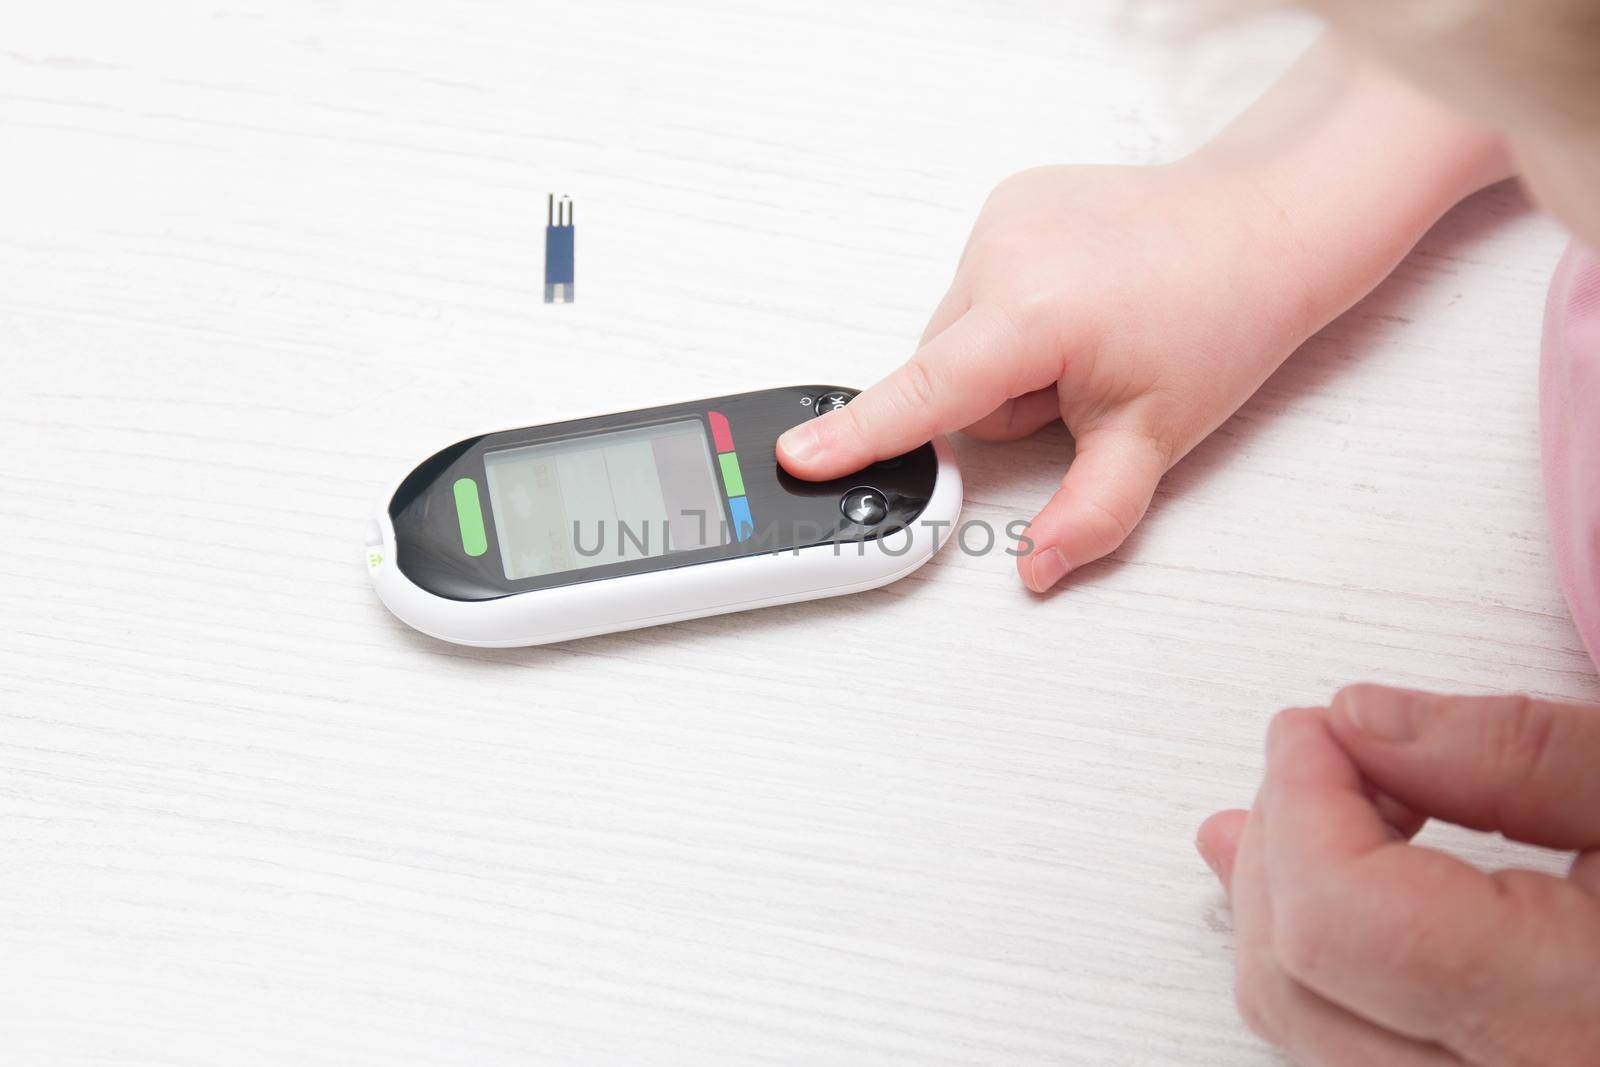 small child presses the button glucose meter, blood glucose meter, childhood diabetes, child health care